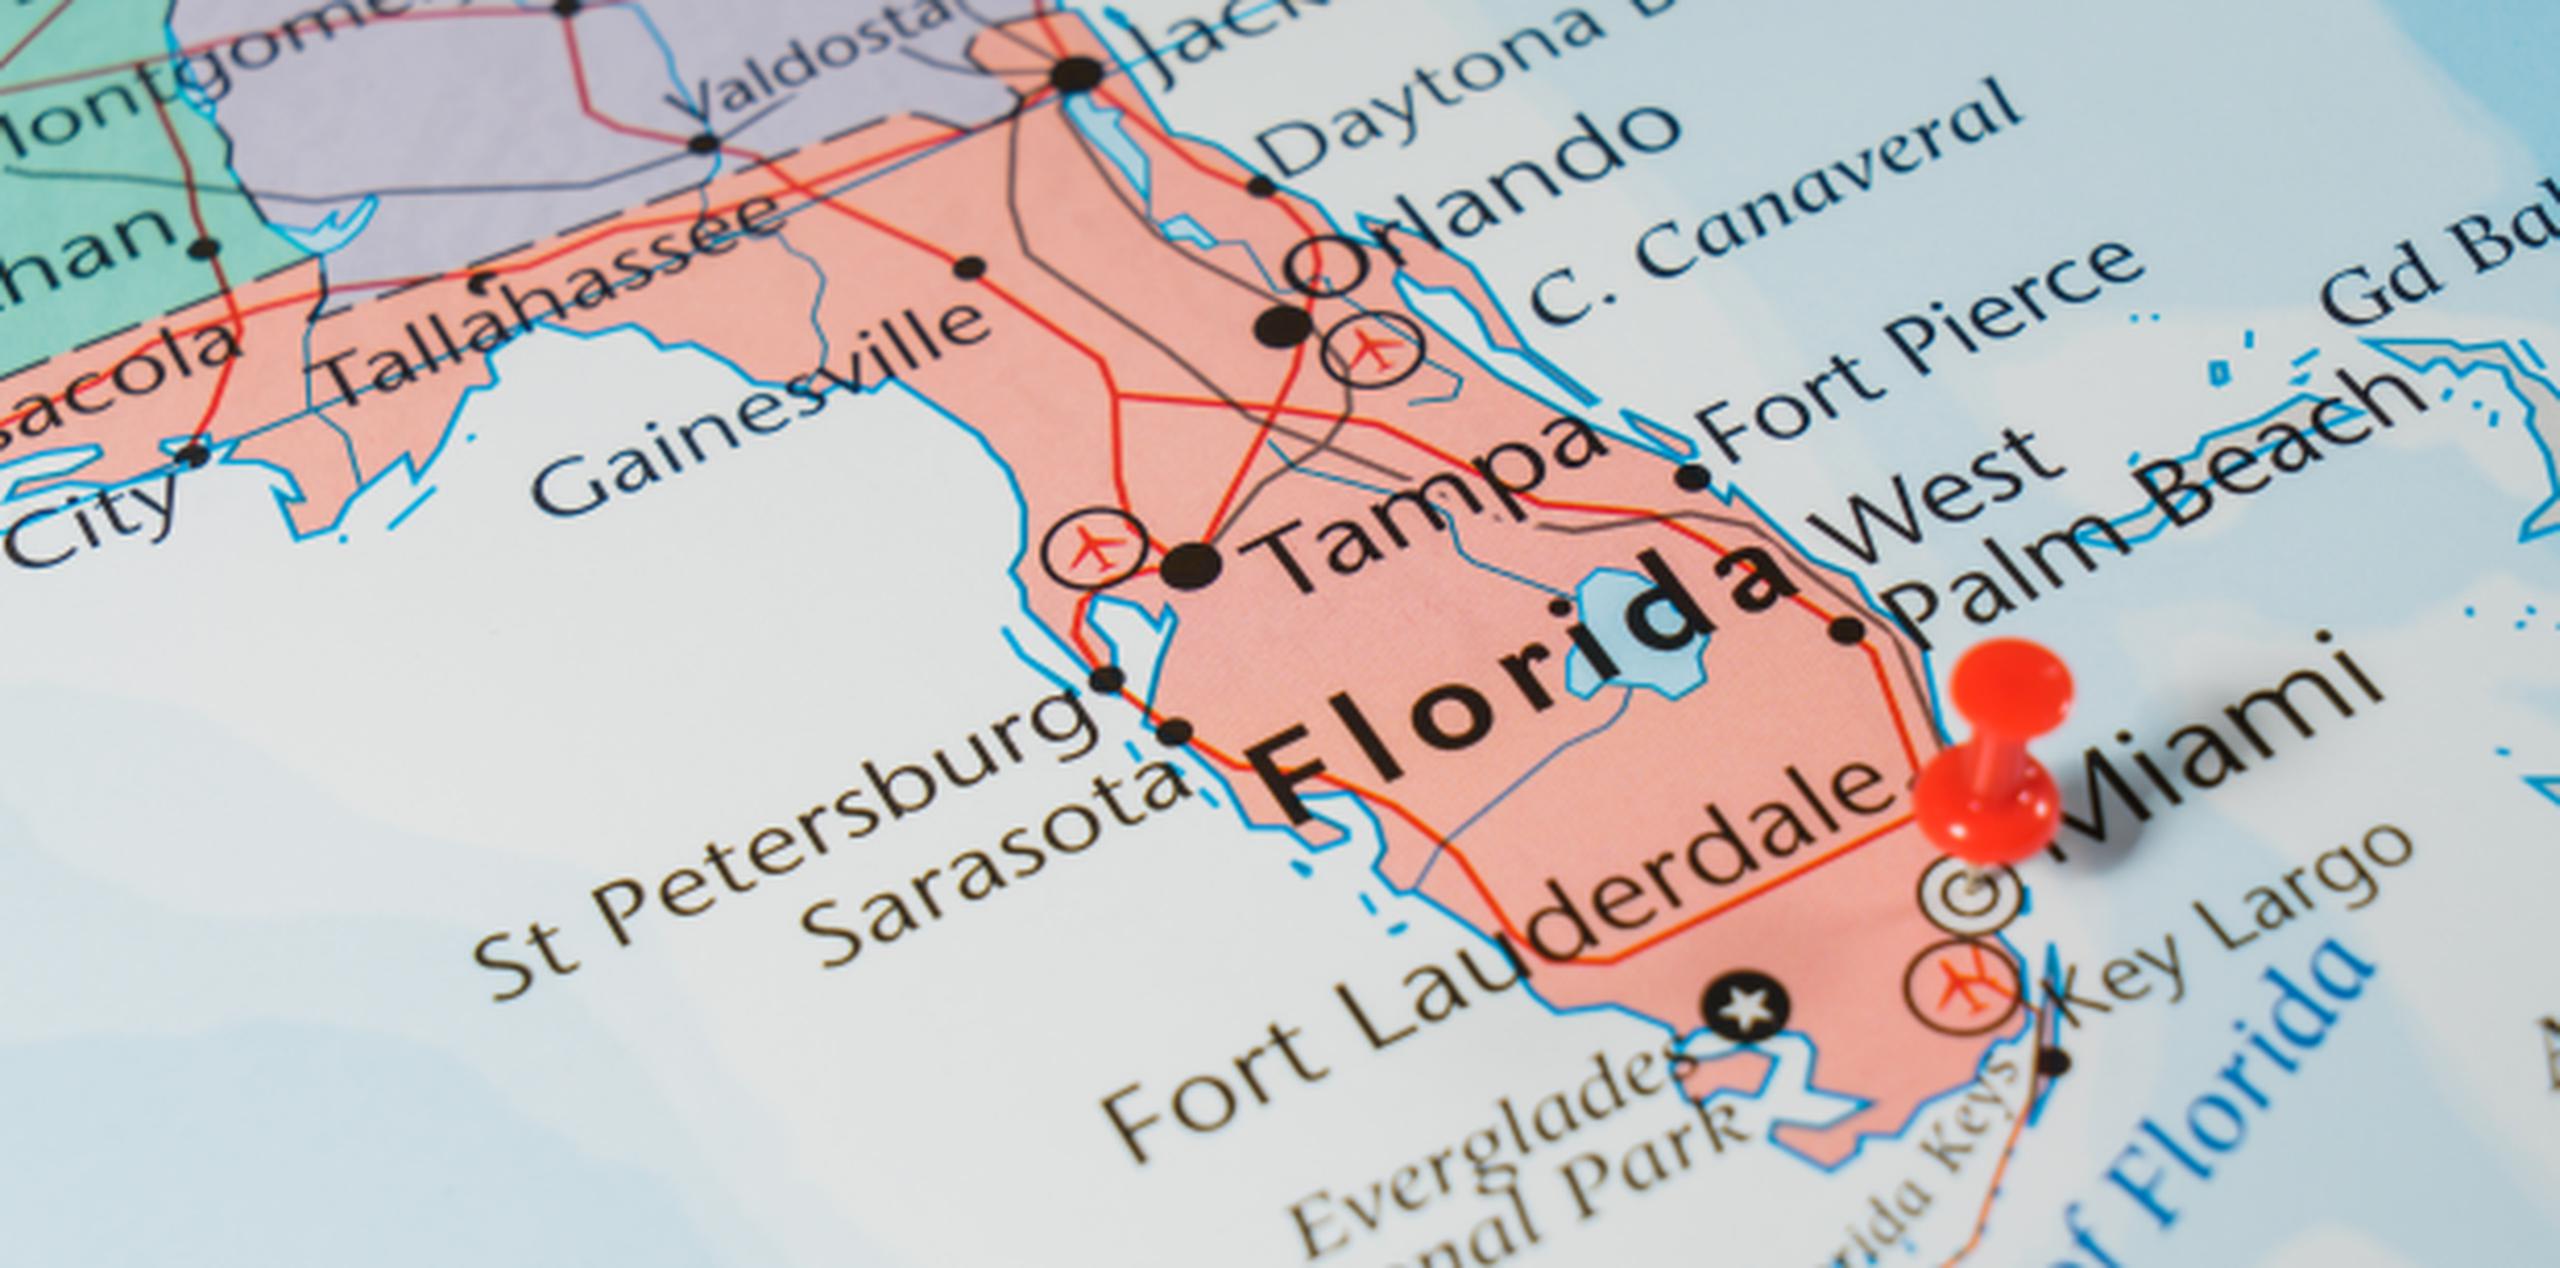 En junio Florida creó unos 18,000 nuevos empleos. (Shutterstock)